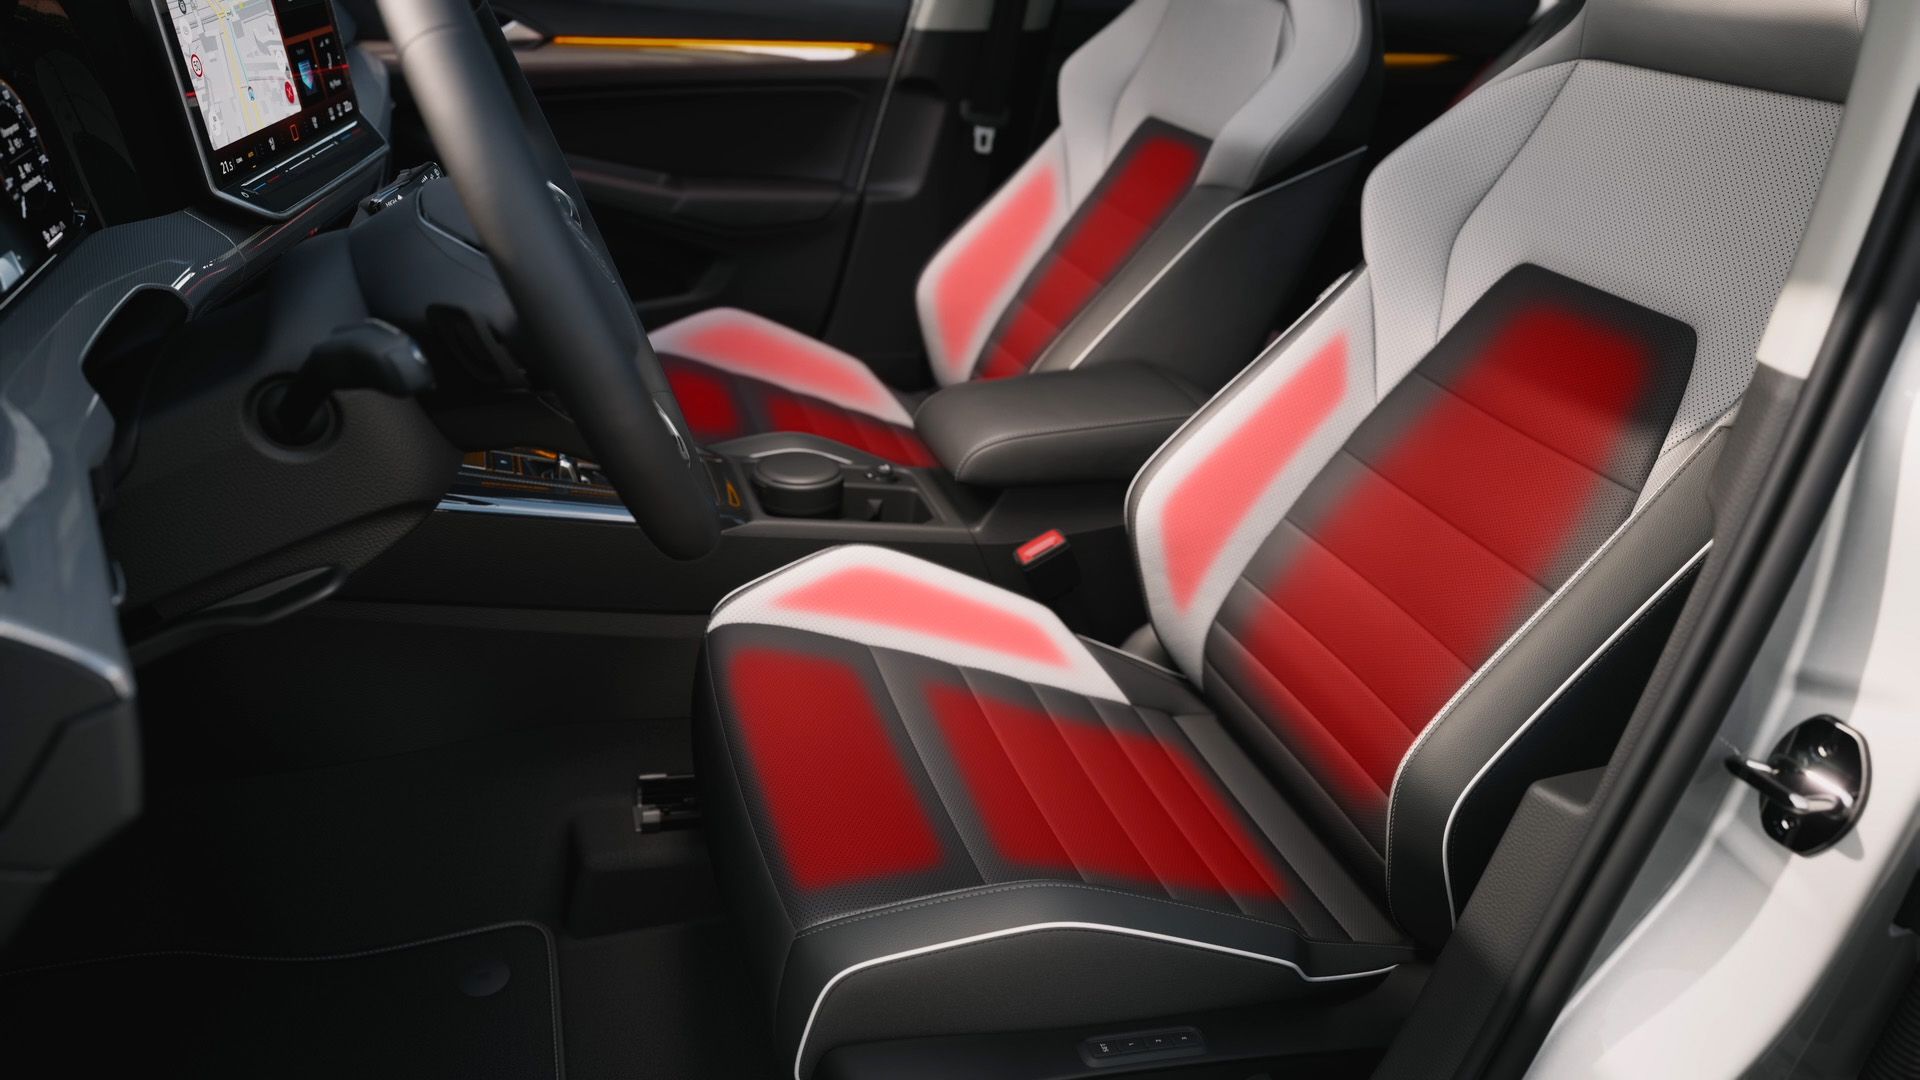 Detailansicht der Sitze im VW Golf mit Veranschaulichung der Sitzheizung